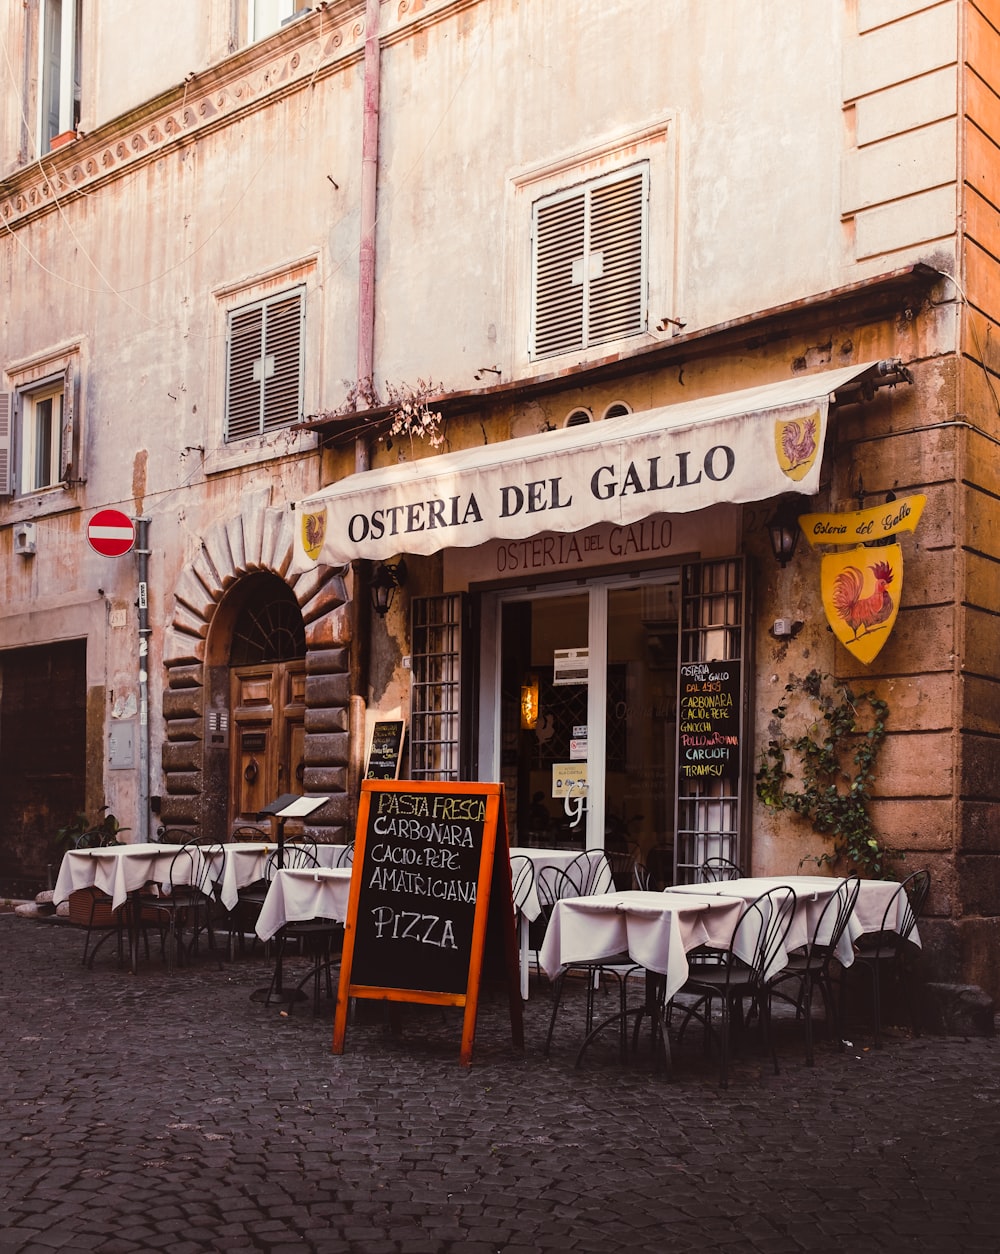 a restaurant called osteria del gallo on a cobblestone street